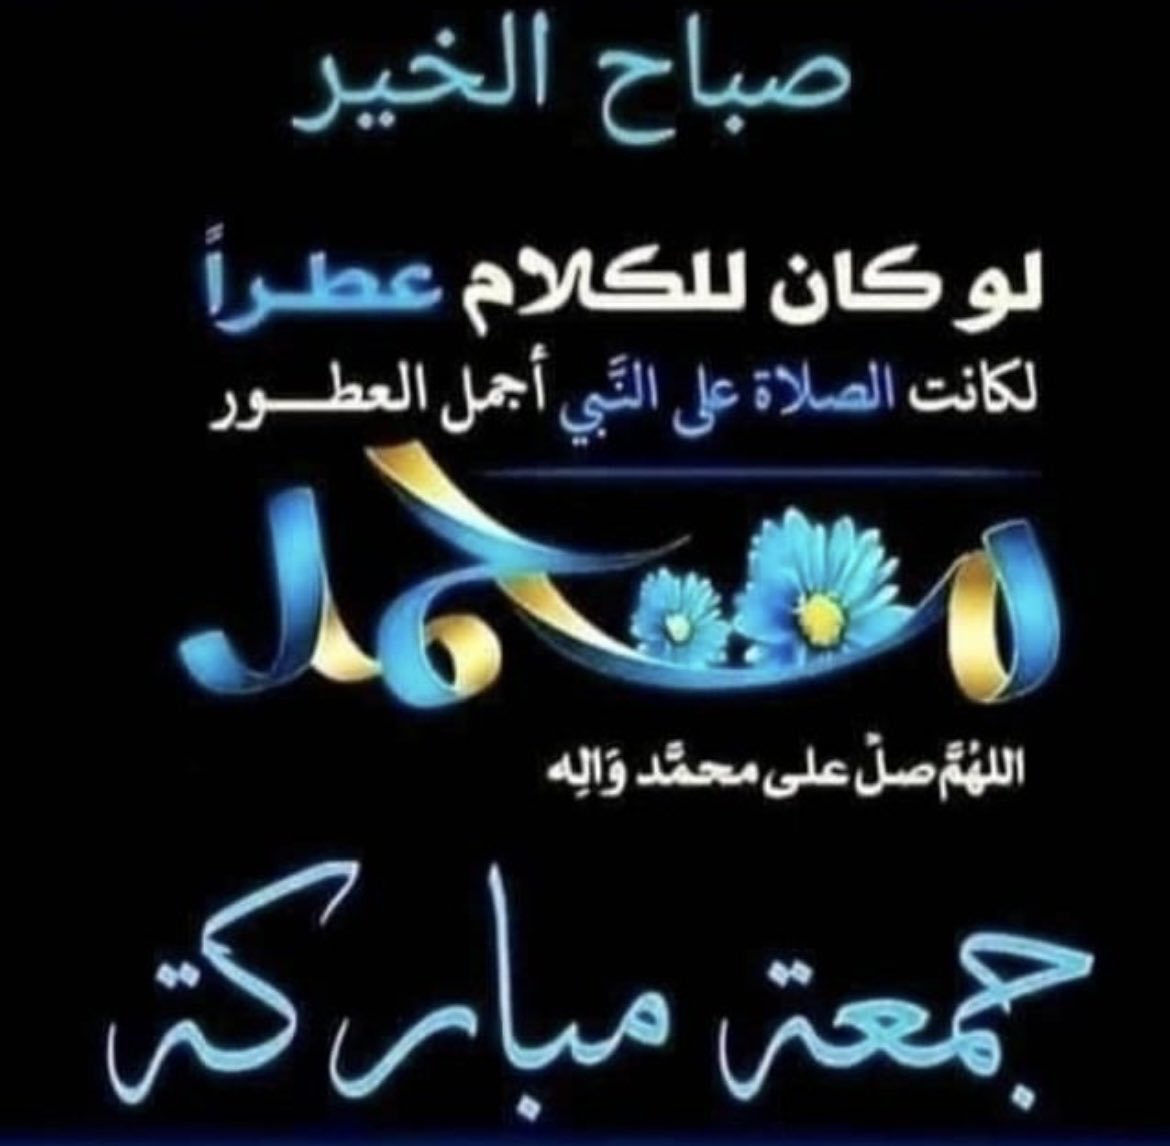 السلام عليكم ورحمه الله وبركاته صباح الخير للجميع